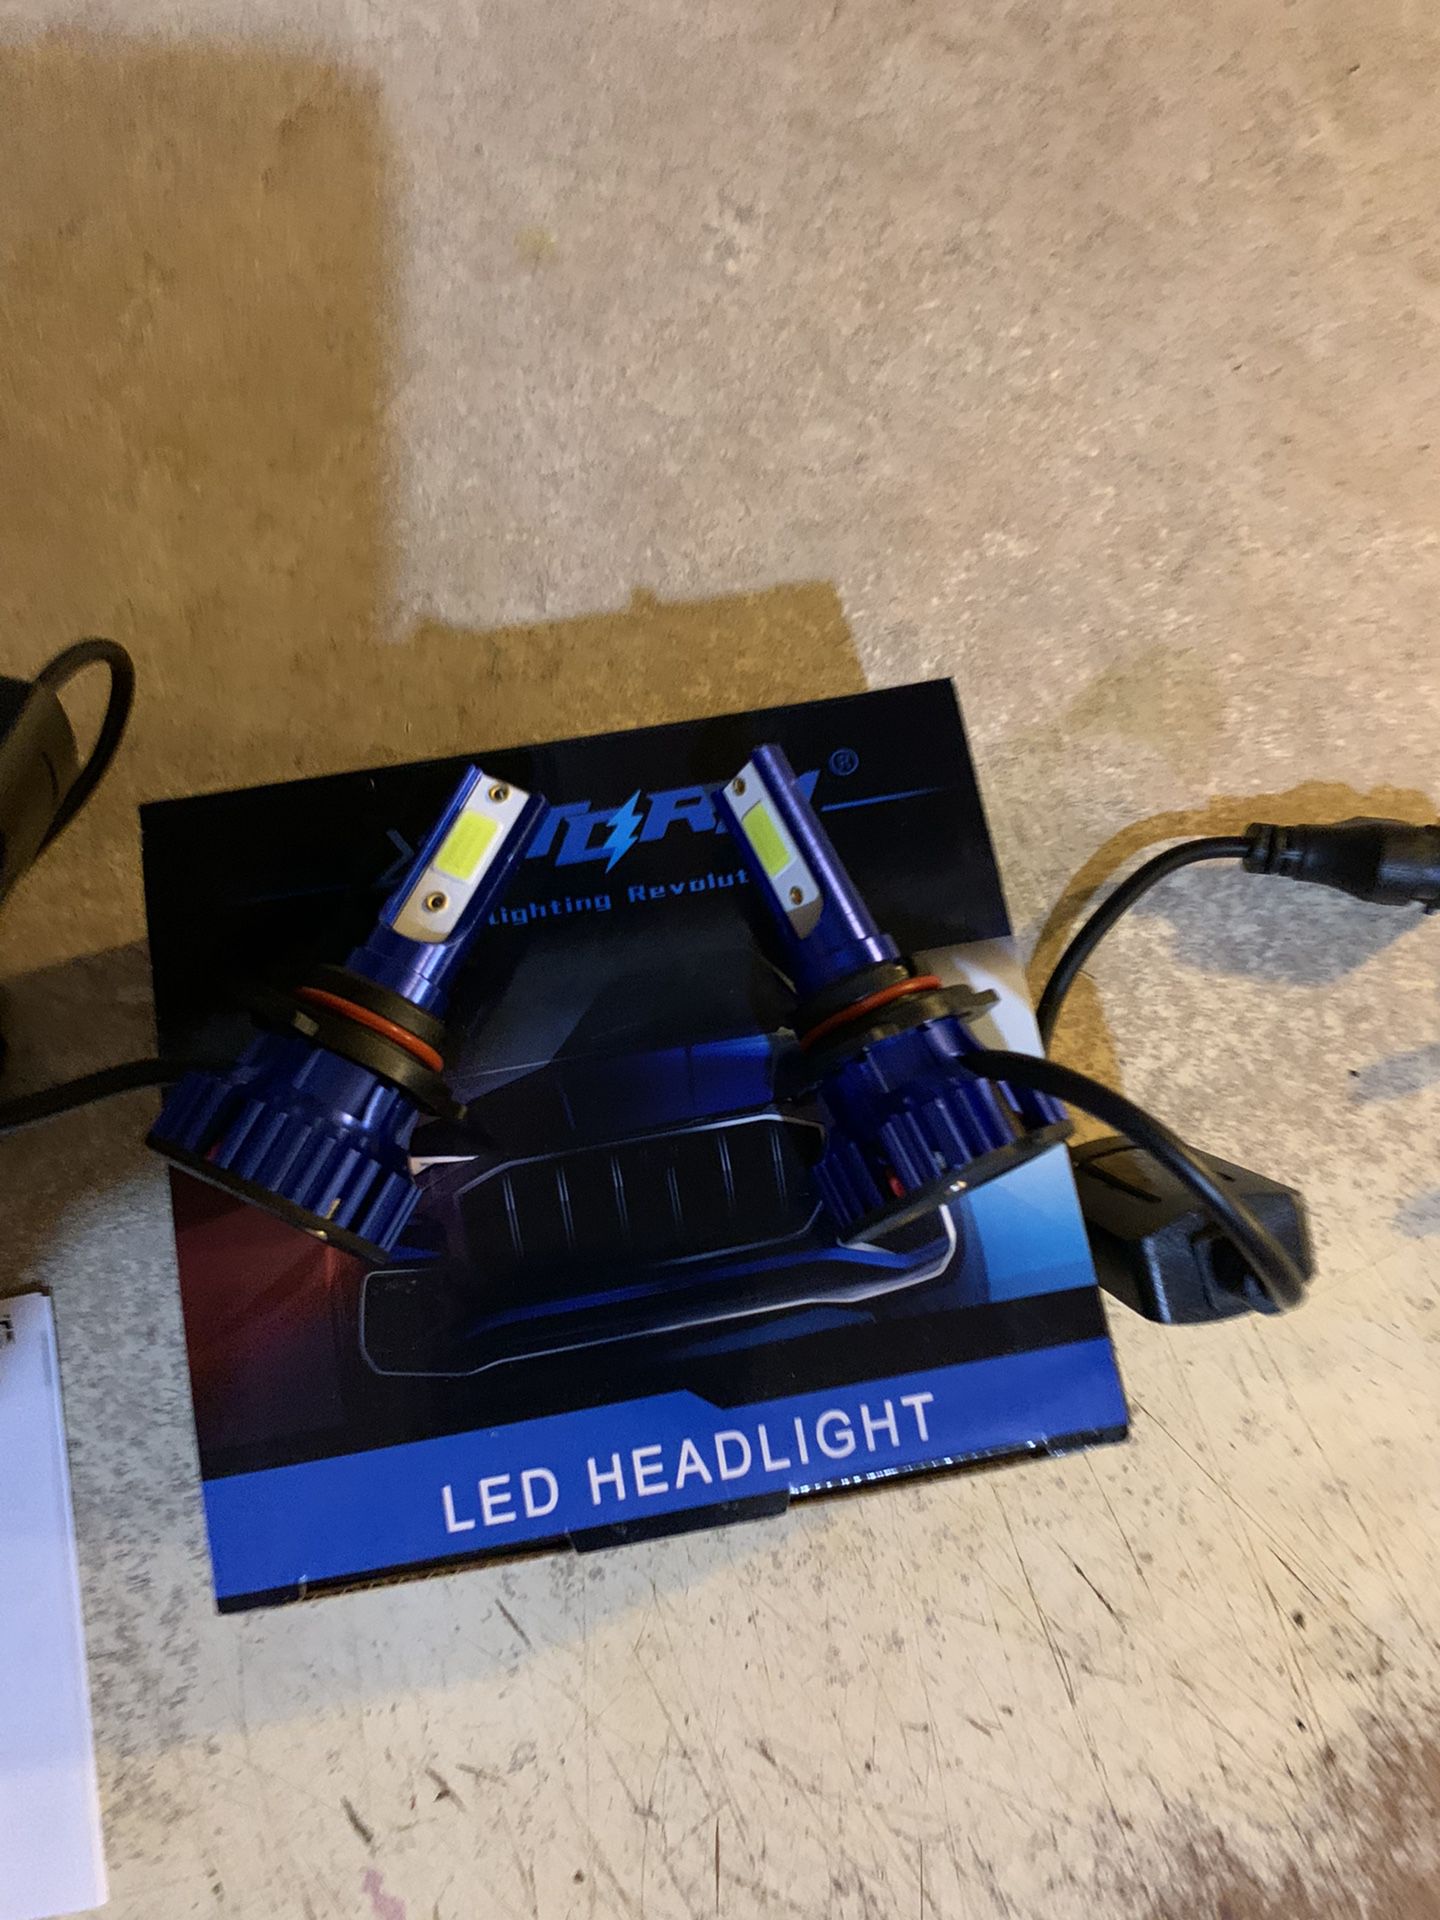  led headlight bulbs